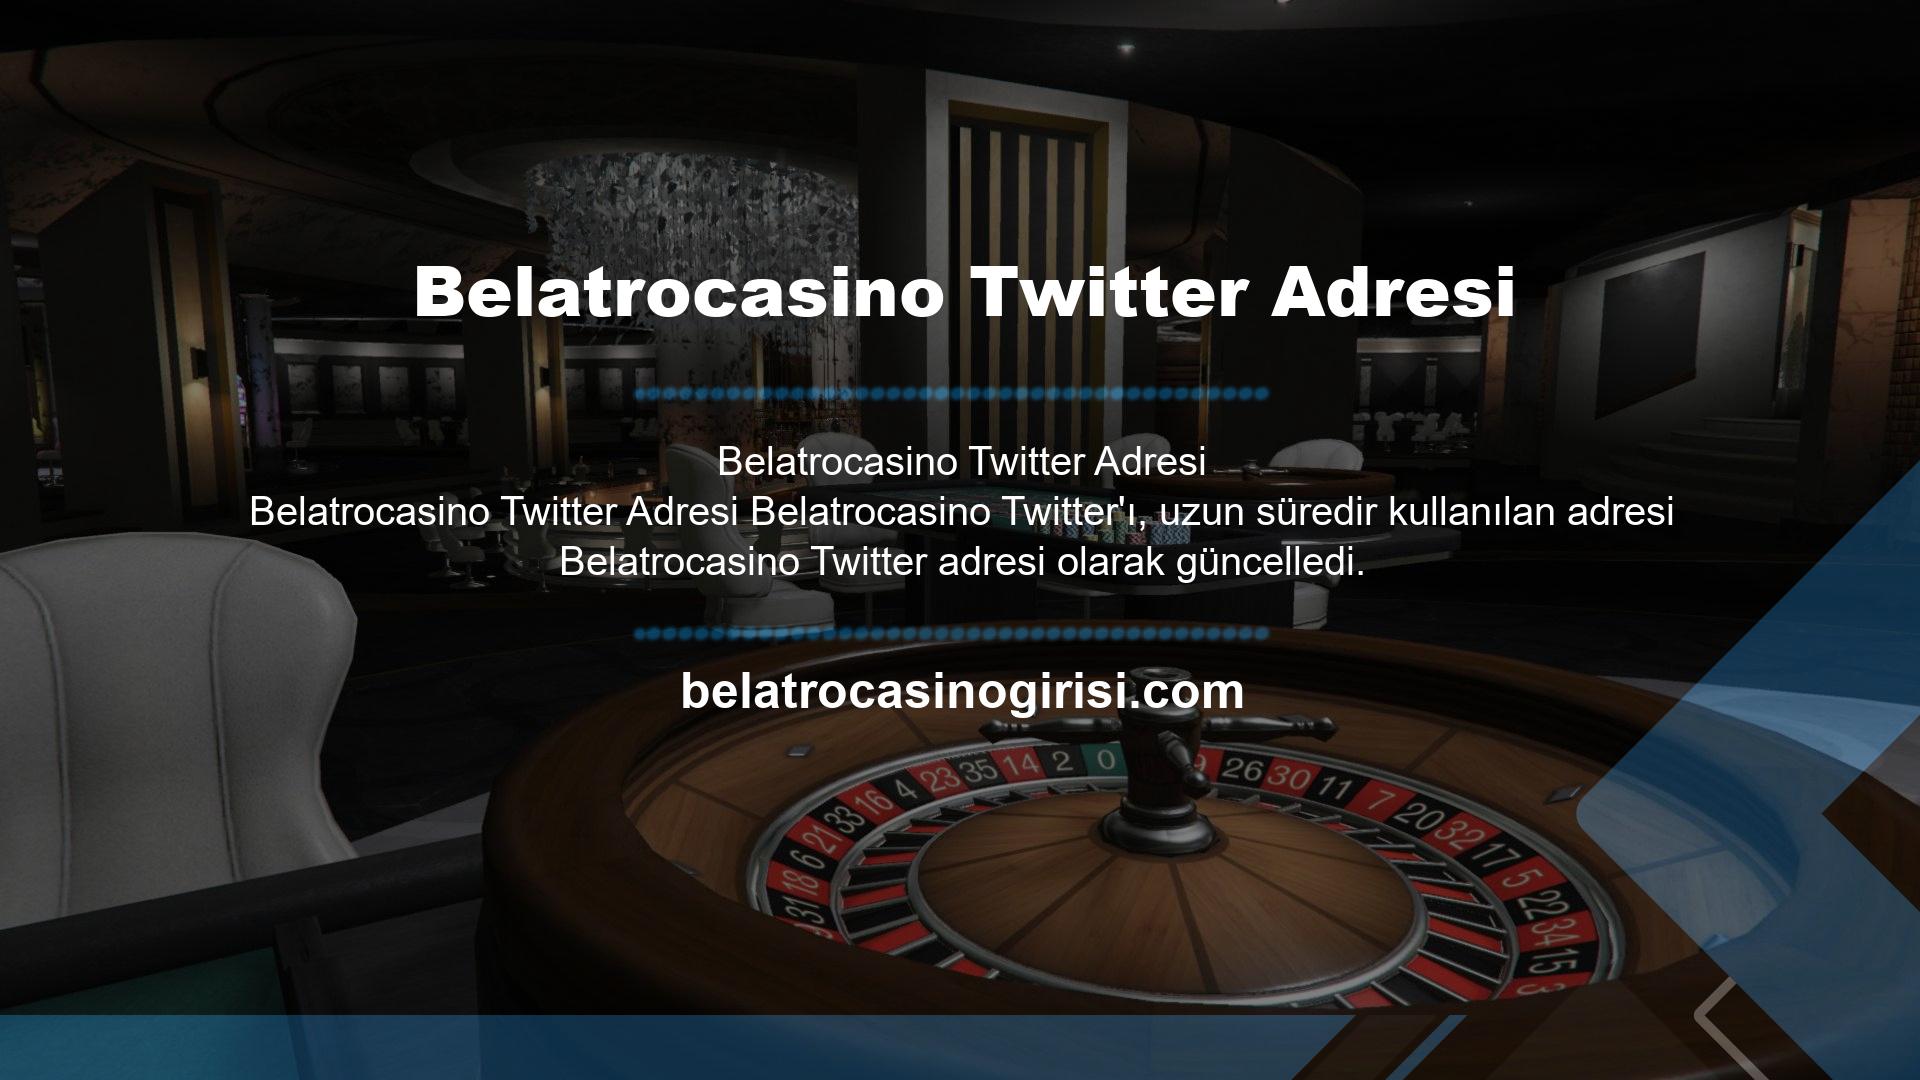 Tüm bahis siteleri zaman zaman adres değiştirmektedir ve Belatrocasino Twitter, kullanıcıların bu değişikliklerden etkilenmemesi ve yeni bir adrese taşınmaması için elinden geleni yapacaktır